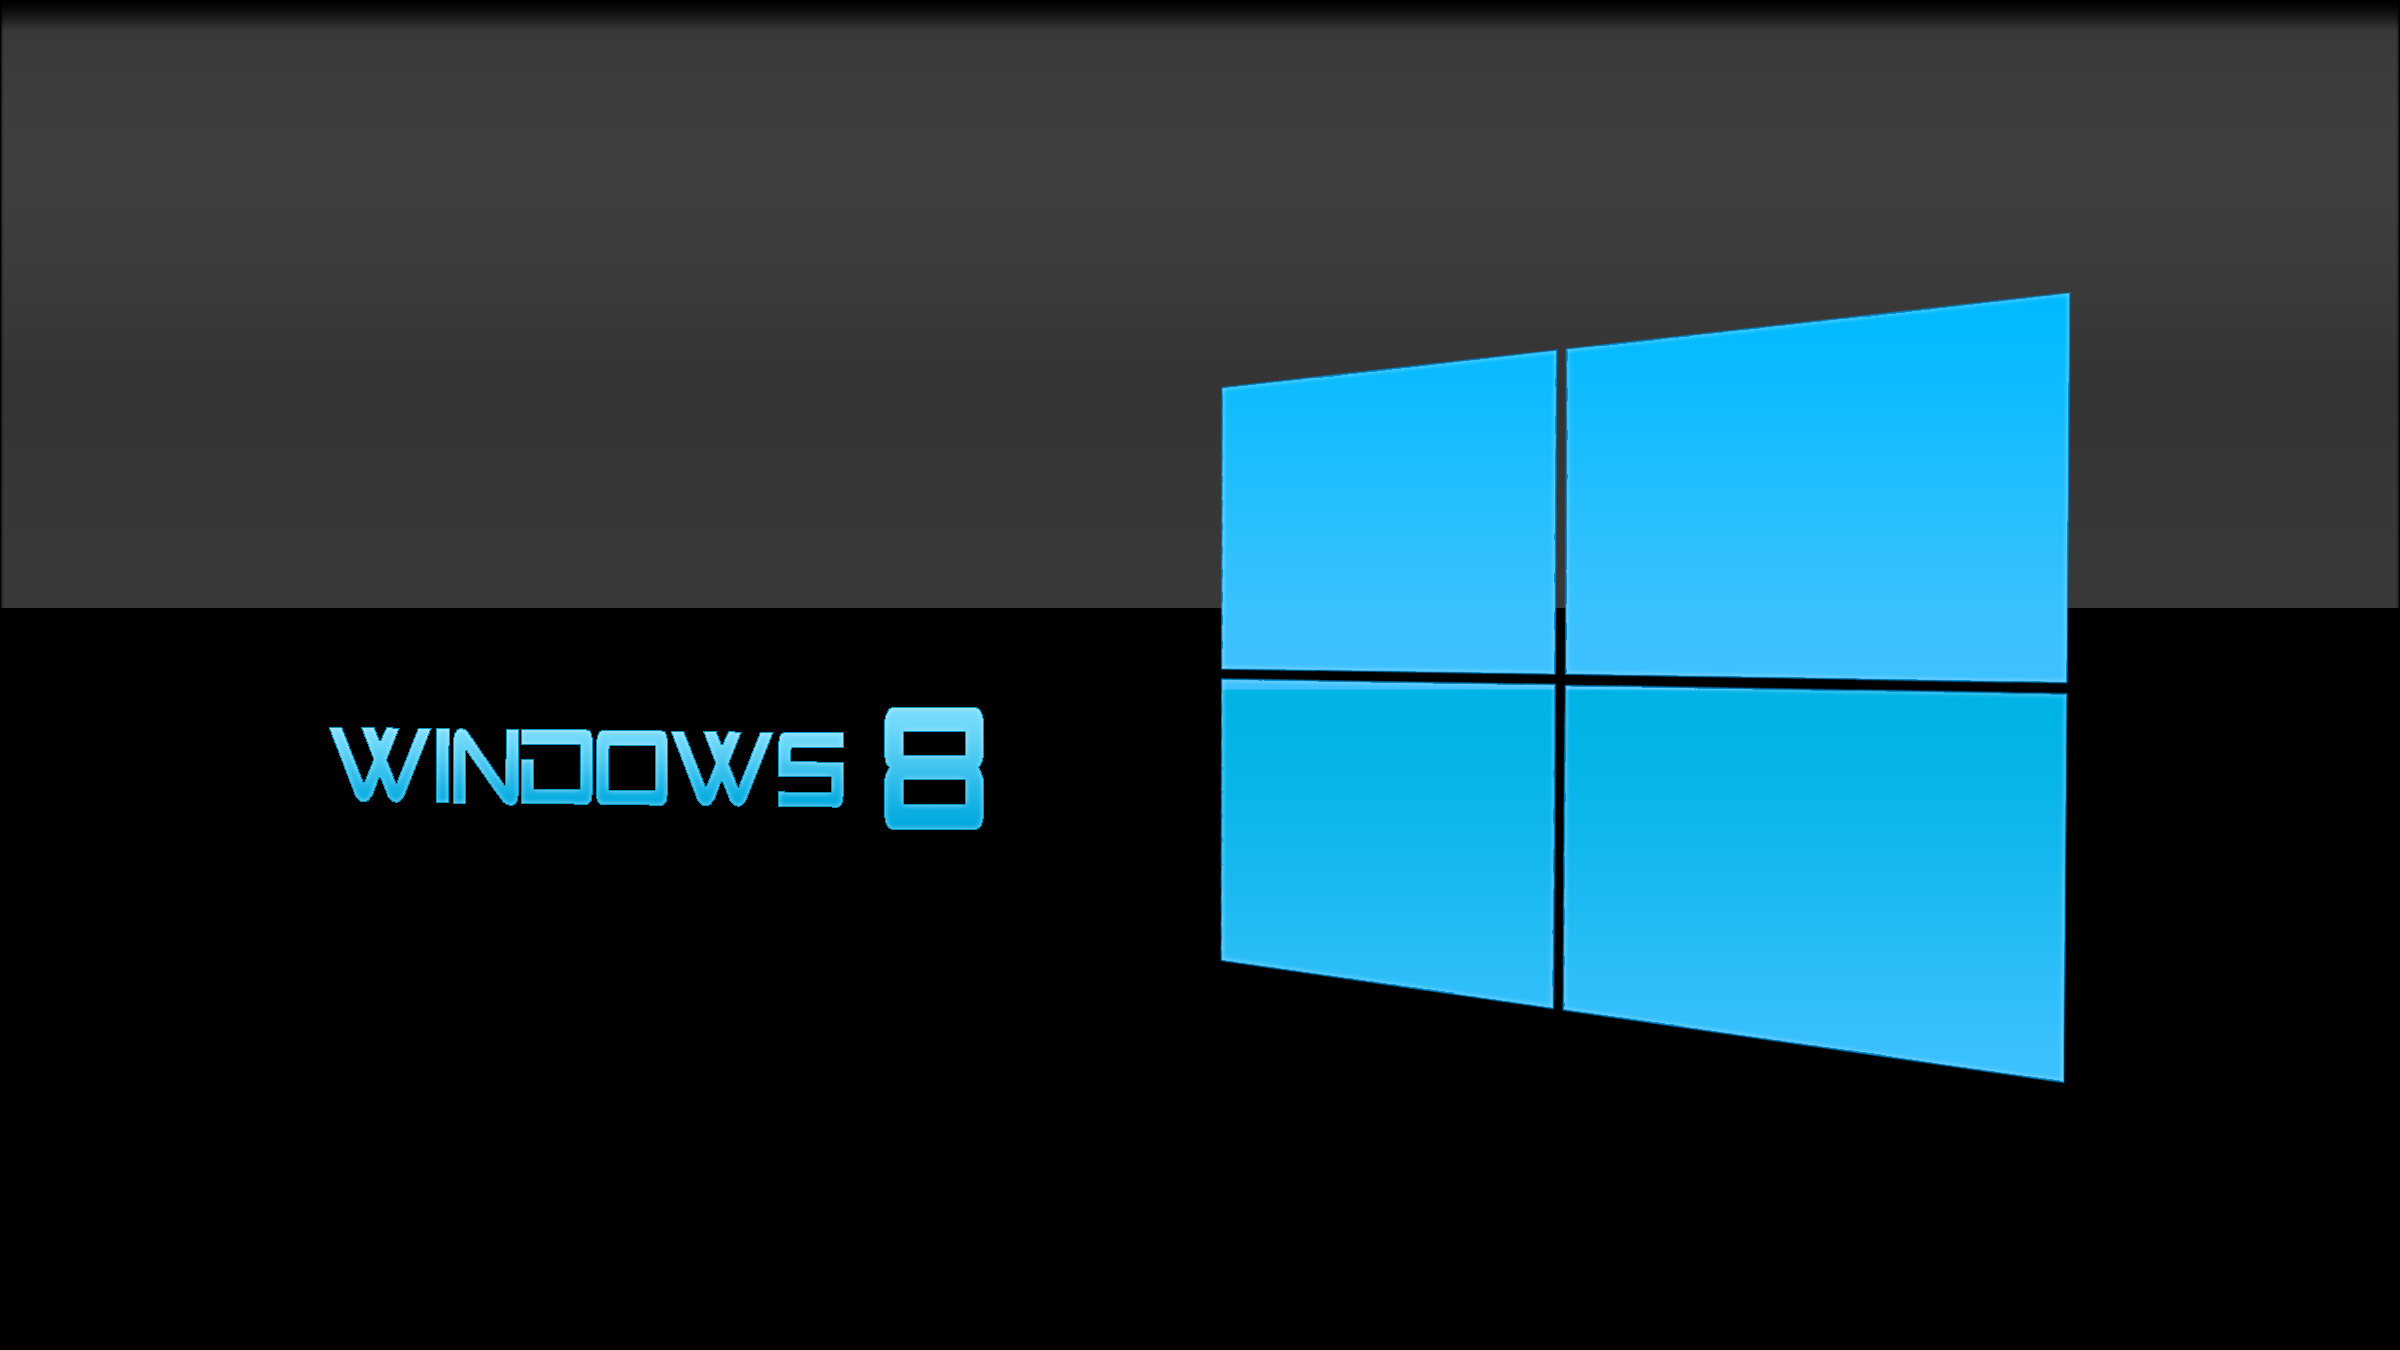 Những hình ảnh với chủ đề Windows 8 đem đến cho bạn trải nghiệm tuyệt vời với giao diện đẹp mắt, tinh tế và đầy sức sống. Hãy cùng đắm mình trong không gian kết hợp giữa màu sắc và hình ảnh tuyệt đẹp cùng chủ đề Windows 8!